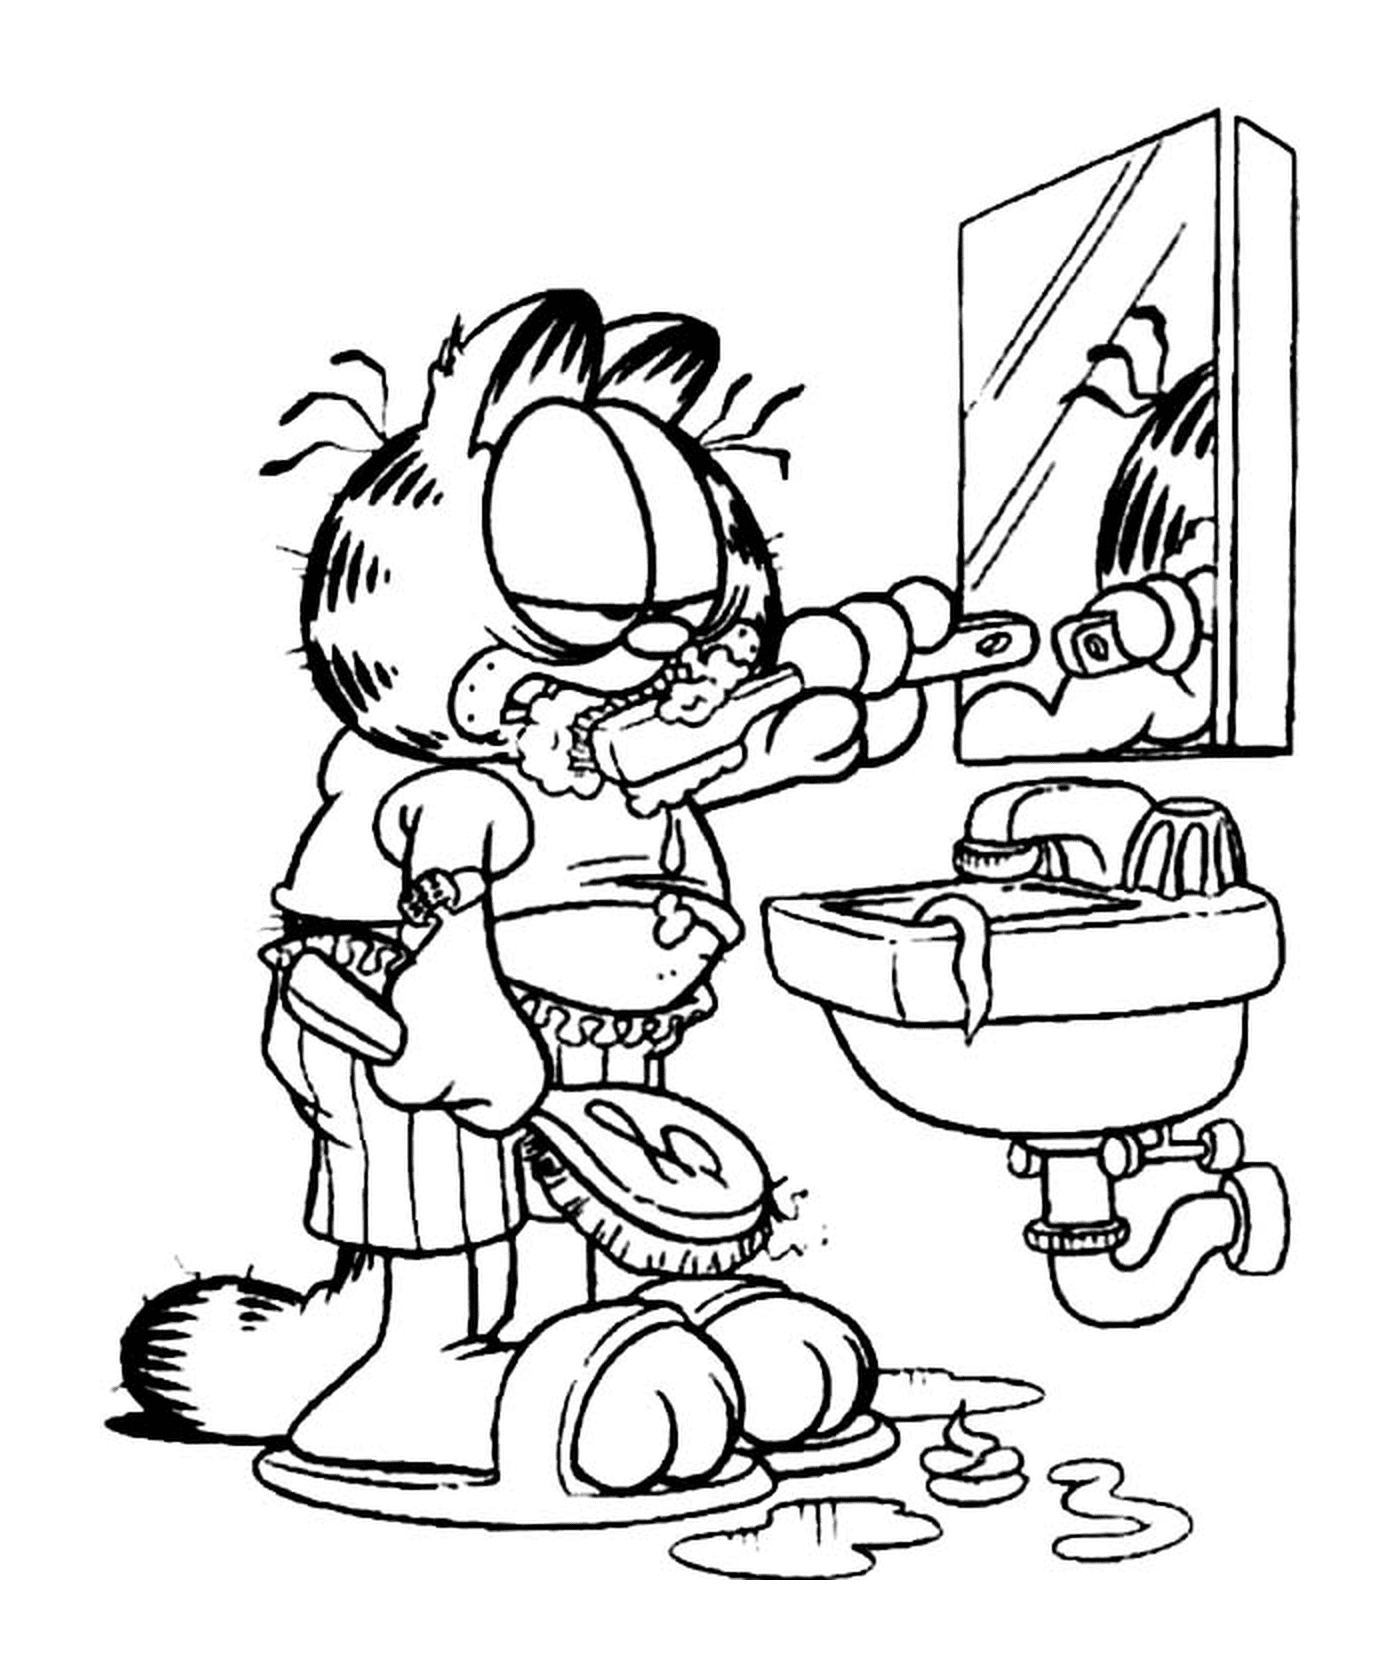  Garfield se cepilla los dientes 